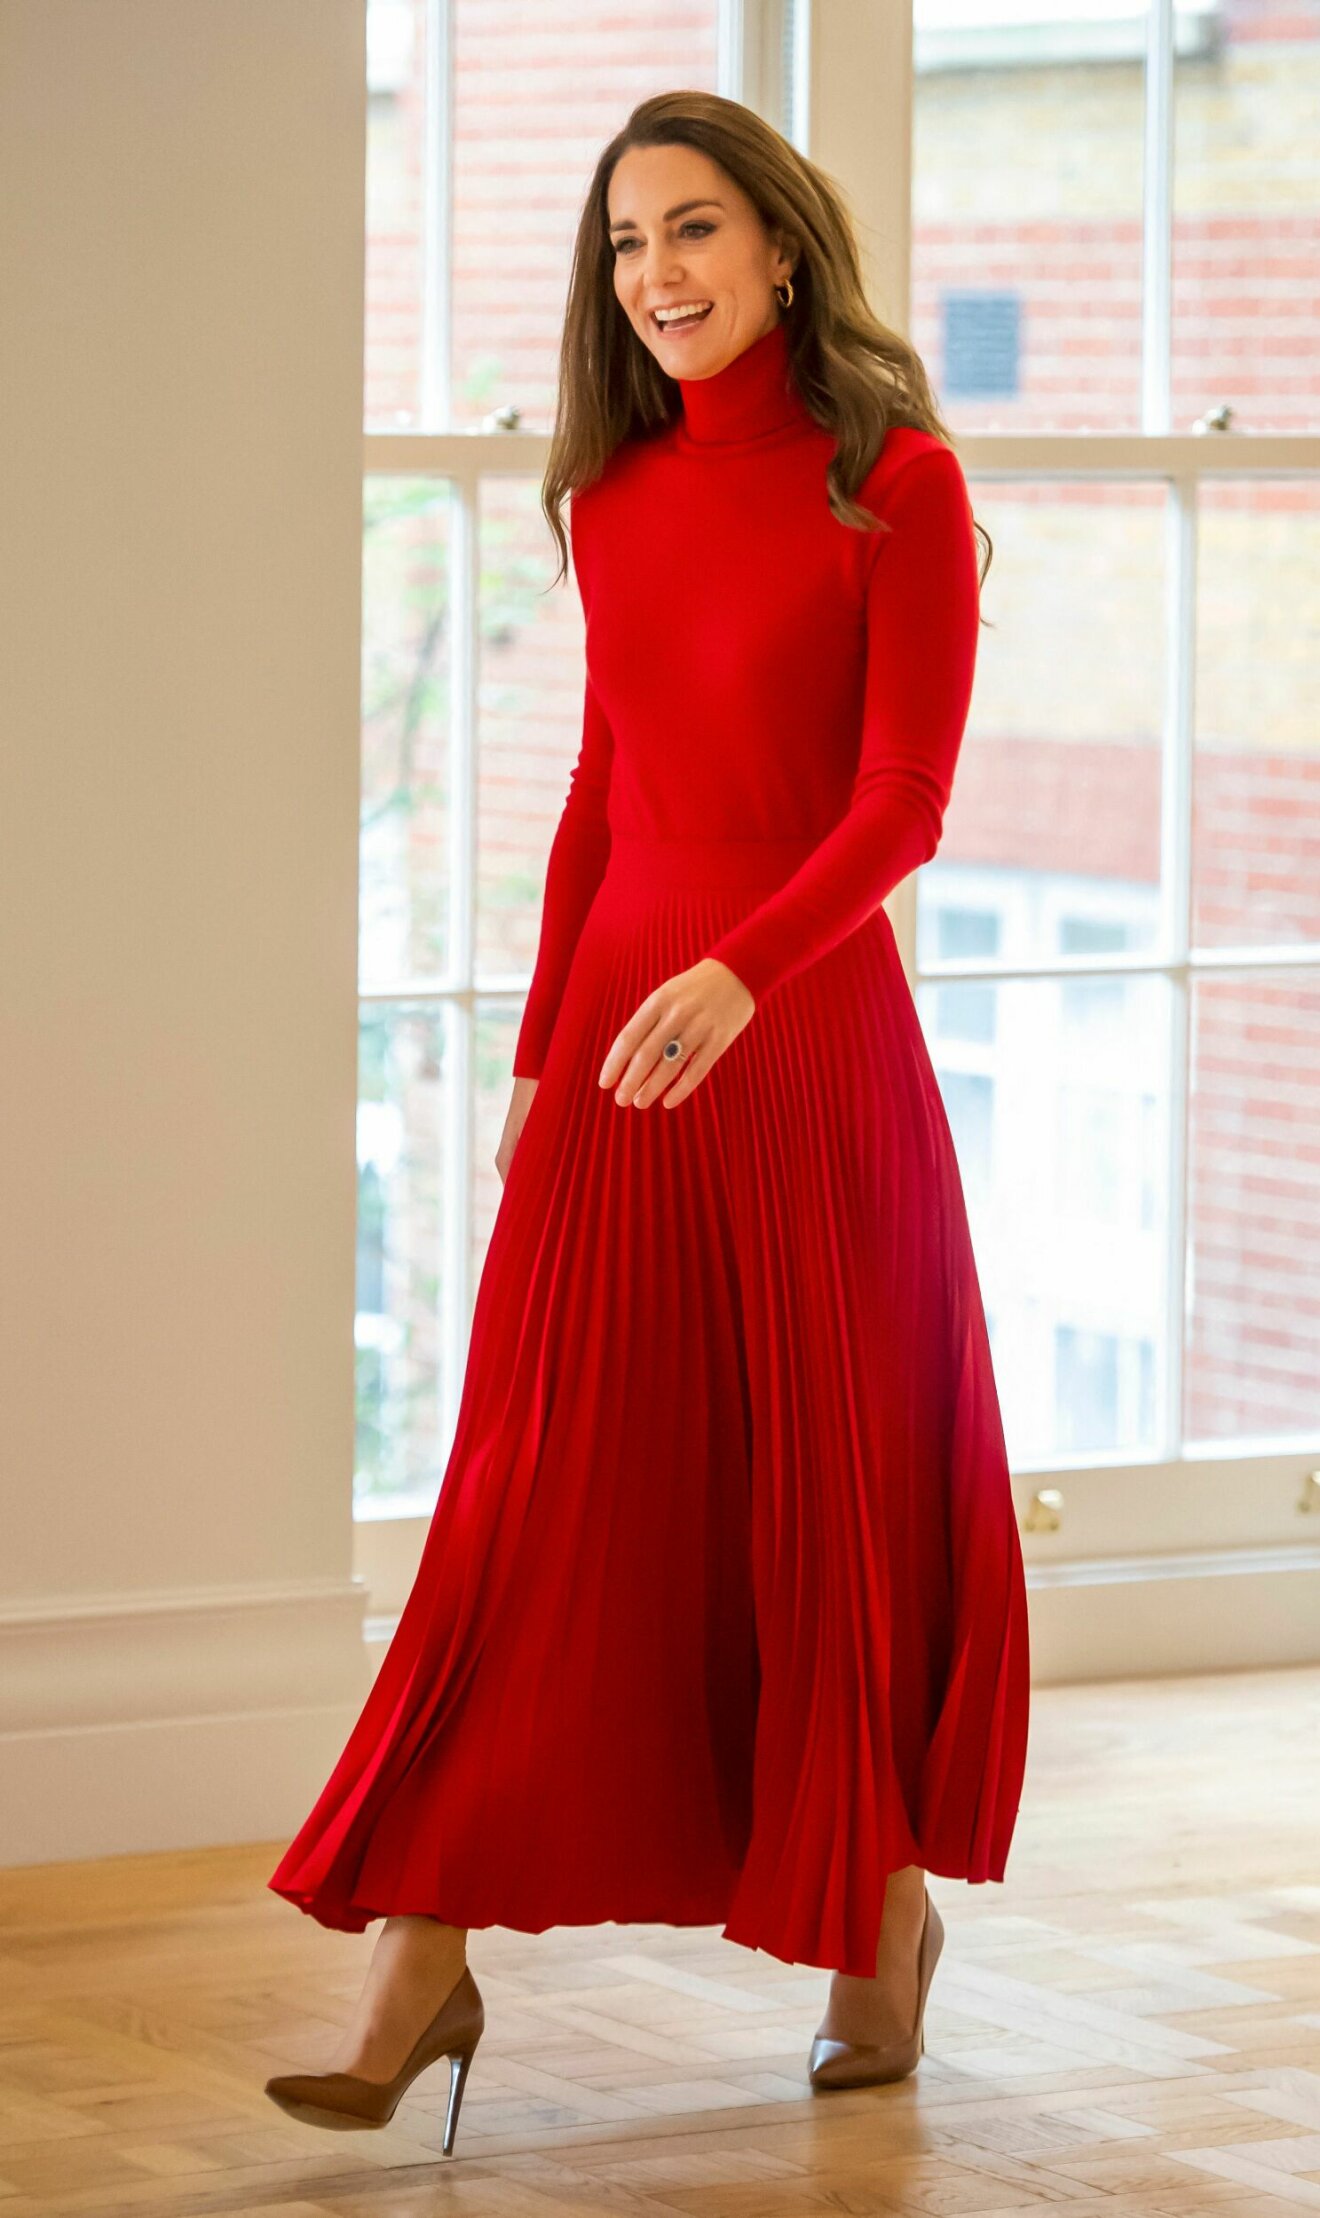 Kate i röd polotröja och plisserad kjol.